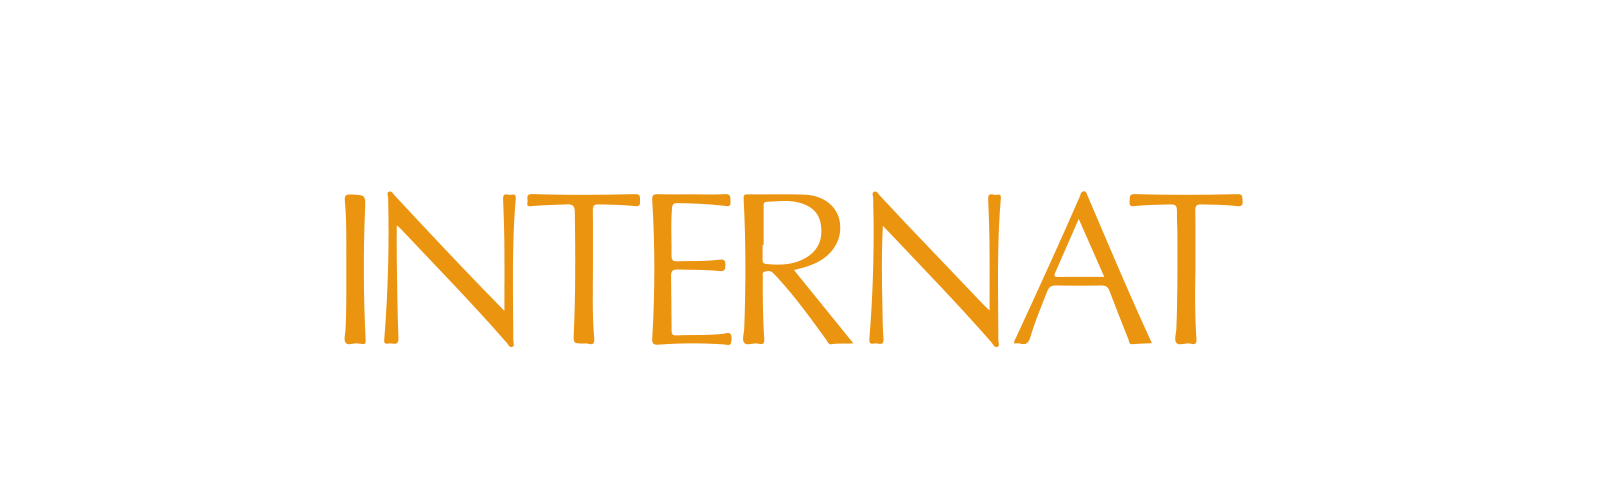 Zinzendorfinternat Königsfeld Logo